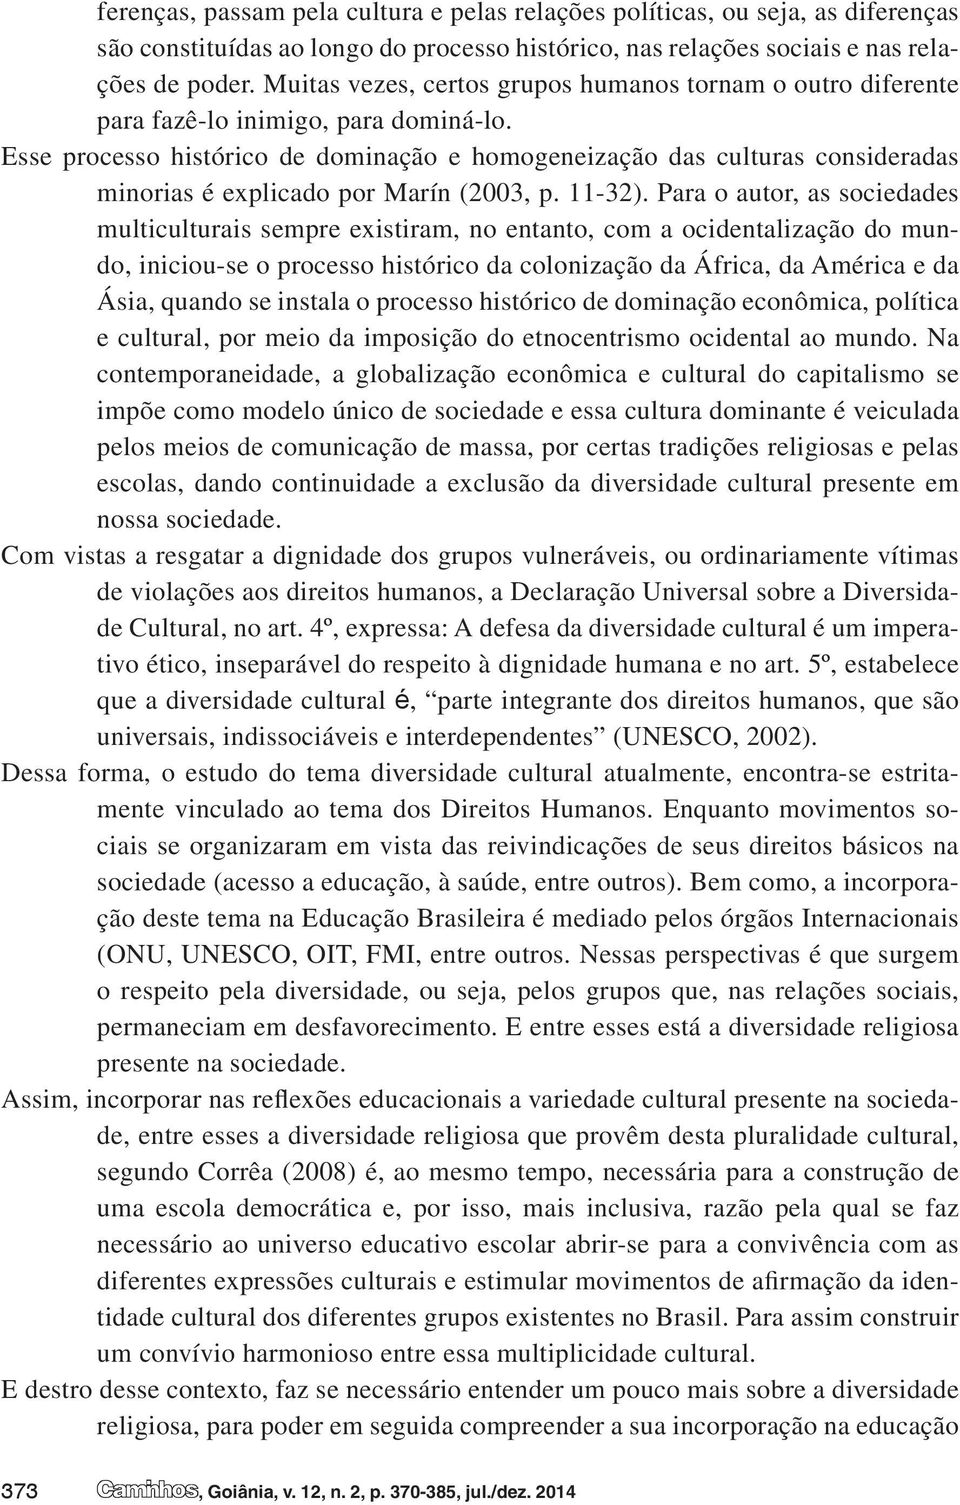 Esse processo histórico de dominação e homogeneização das culturas consideradas minorias é explicado por Marín (2003, p. 11-32).